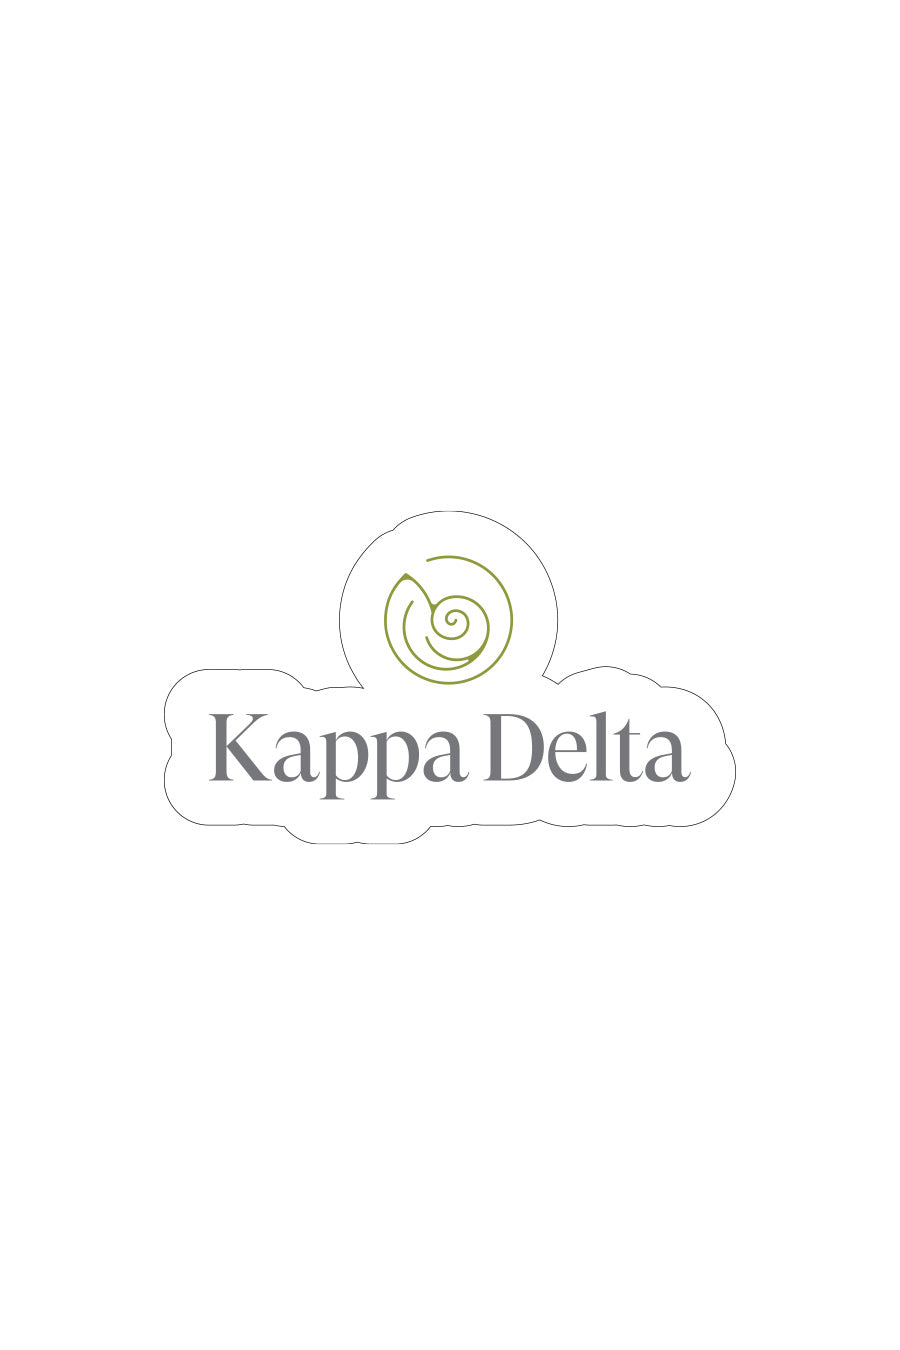 Logo Kappa Delta Decal